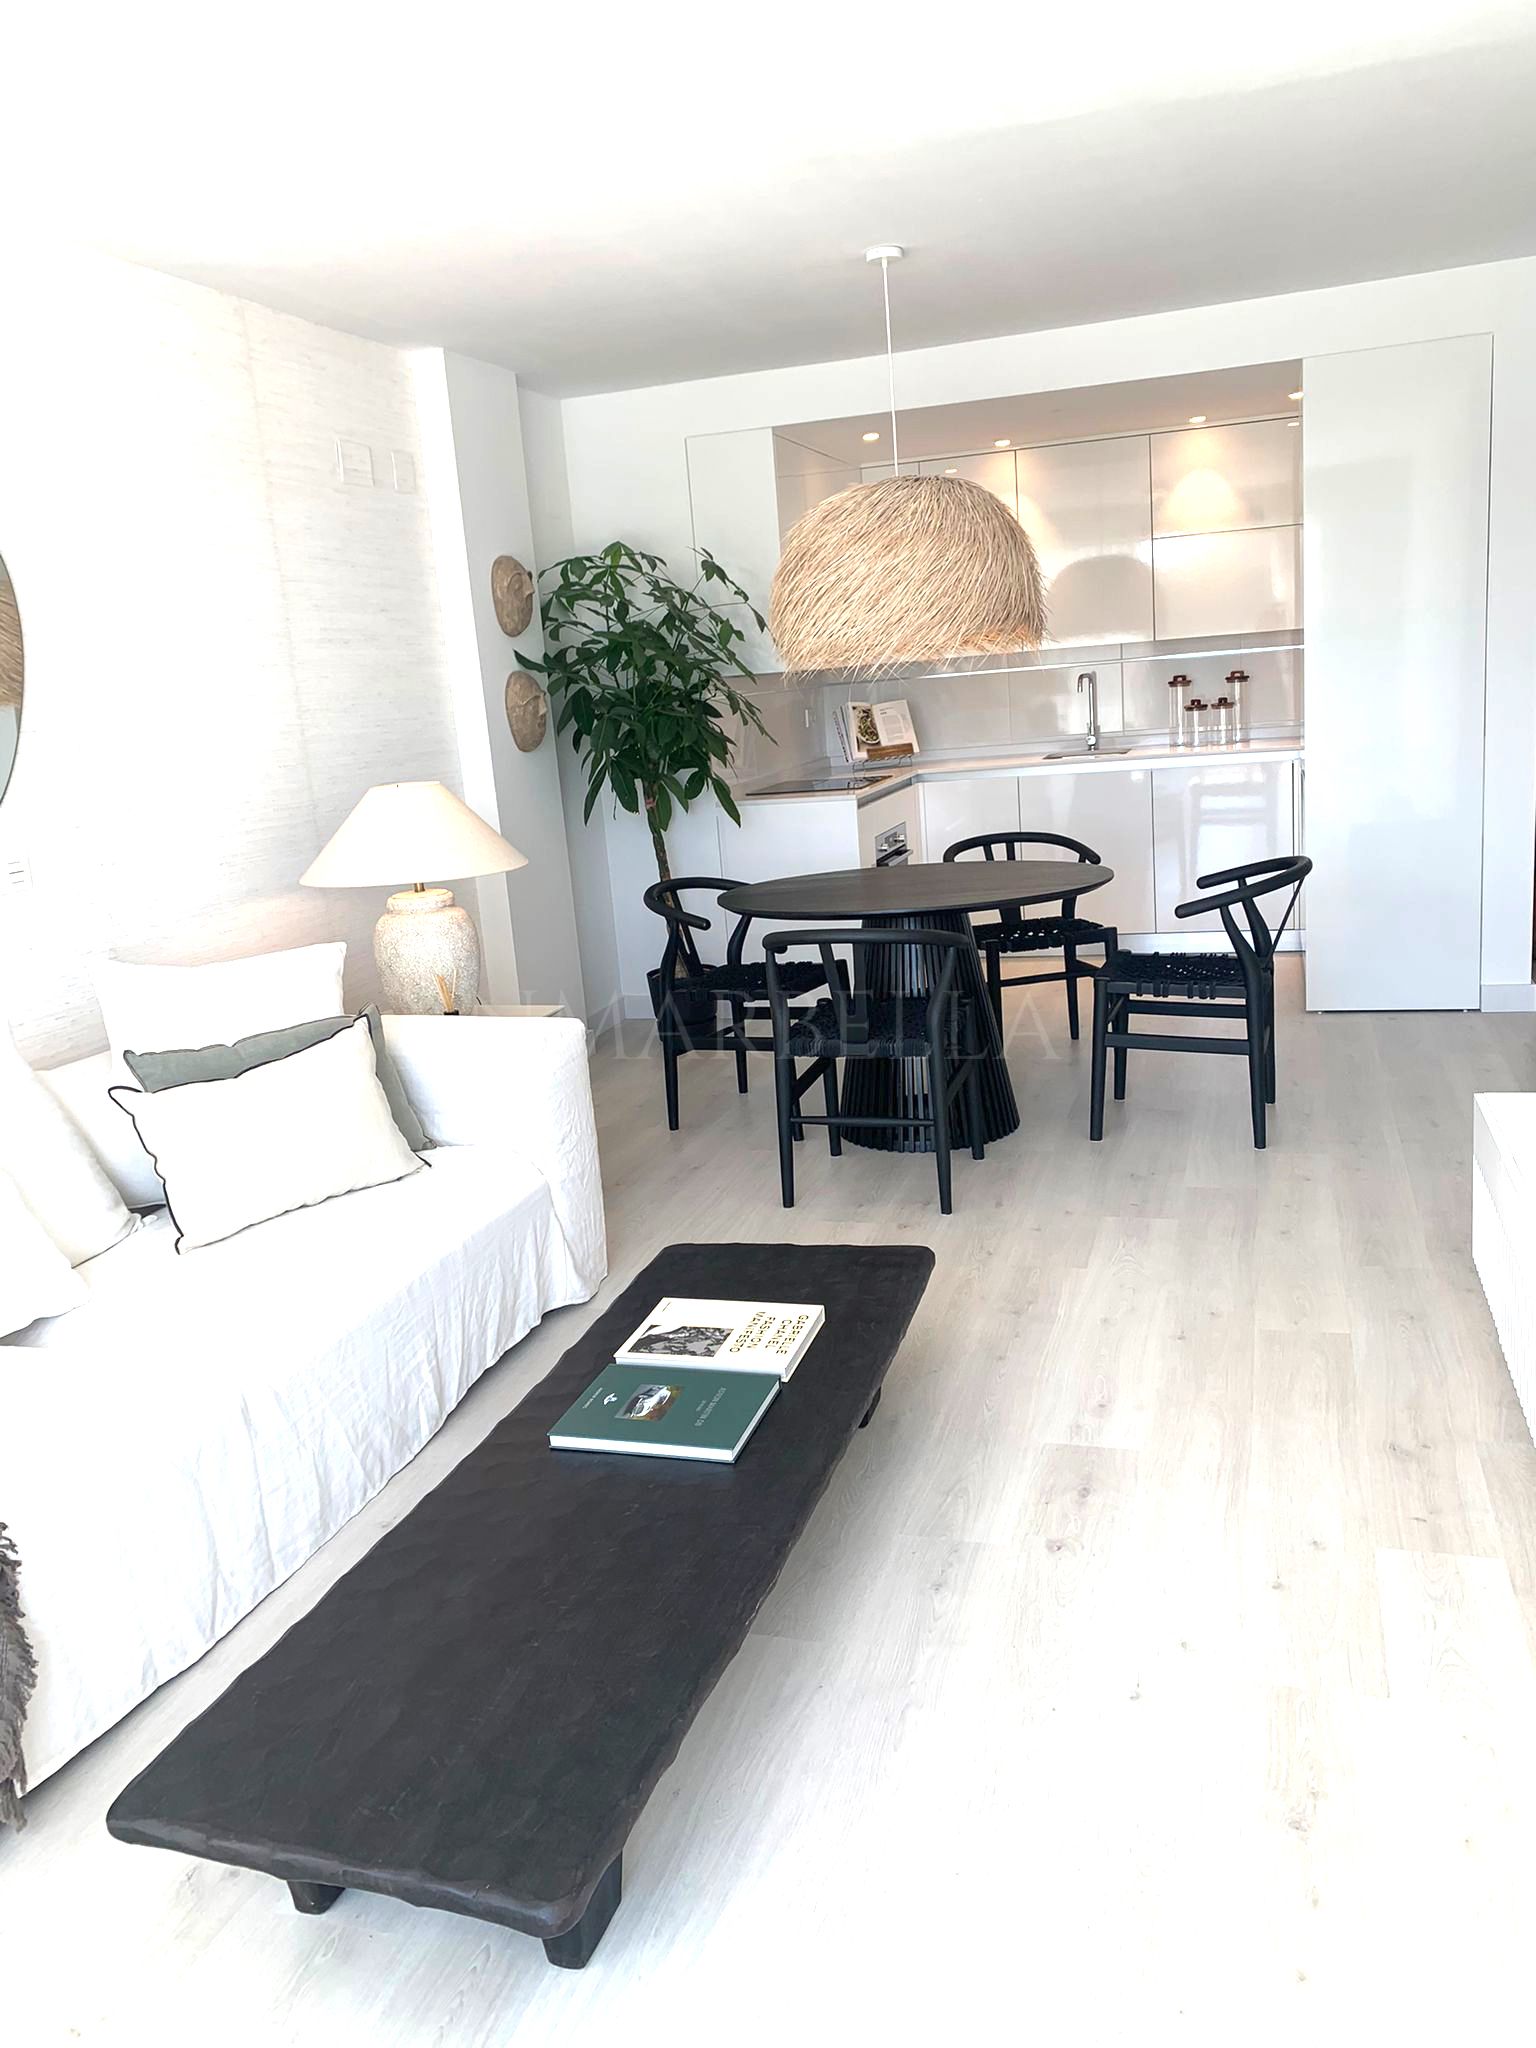 Apartamento nuevo en venta en Fuengirola